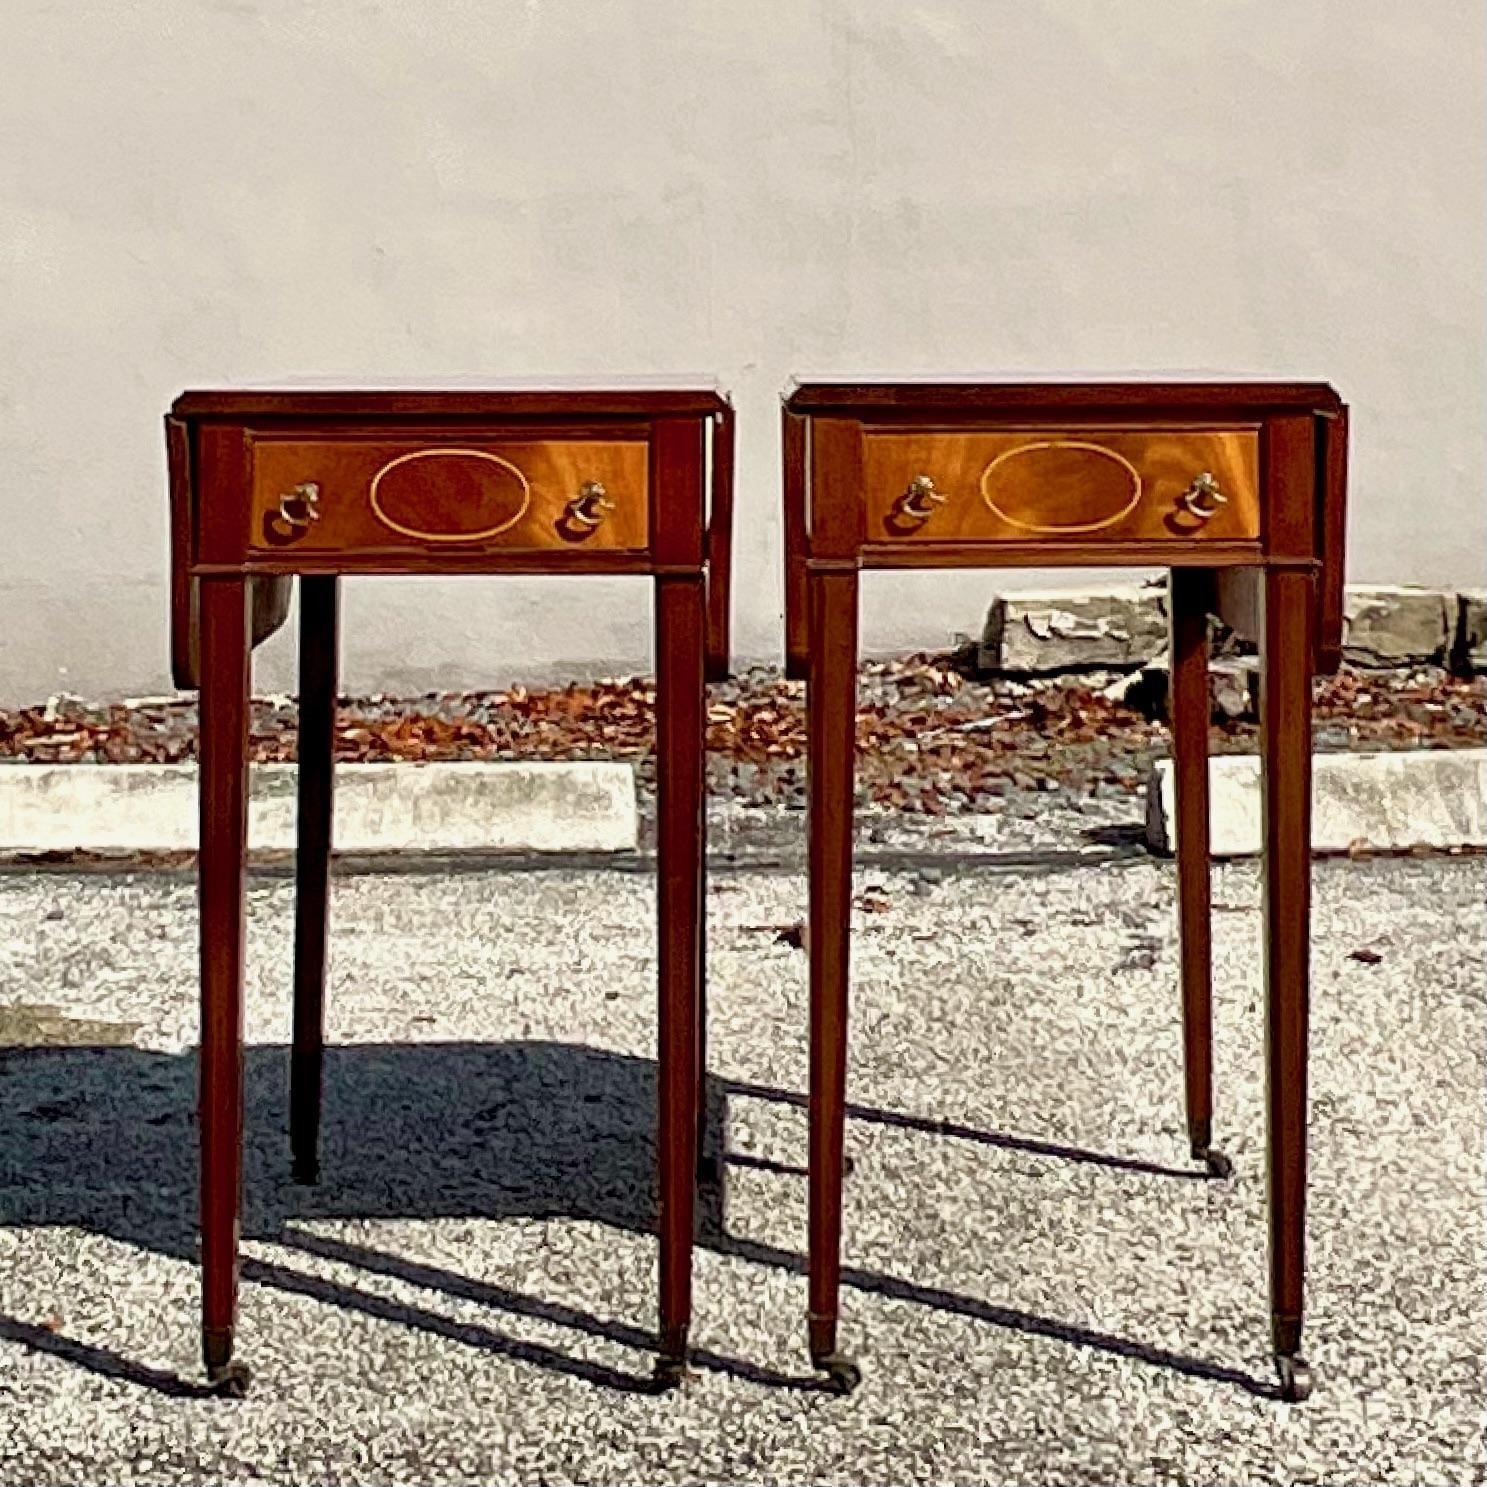 Exquisites Paar Mahagoni-Pembroke-Tische mit Intarsien und quadratischen, konischen Beinen auf Rollen. Dieses Paar Pembroke-Tische wertet jeden Raum sofort mit einem Maß an Raffinesse auf, das viele nicht erreichen. Die Schönheit ist mit der